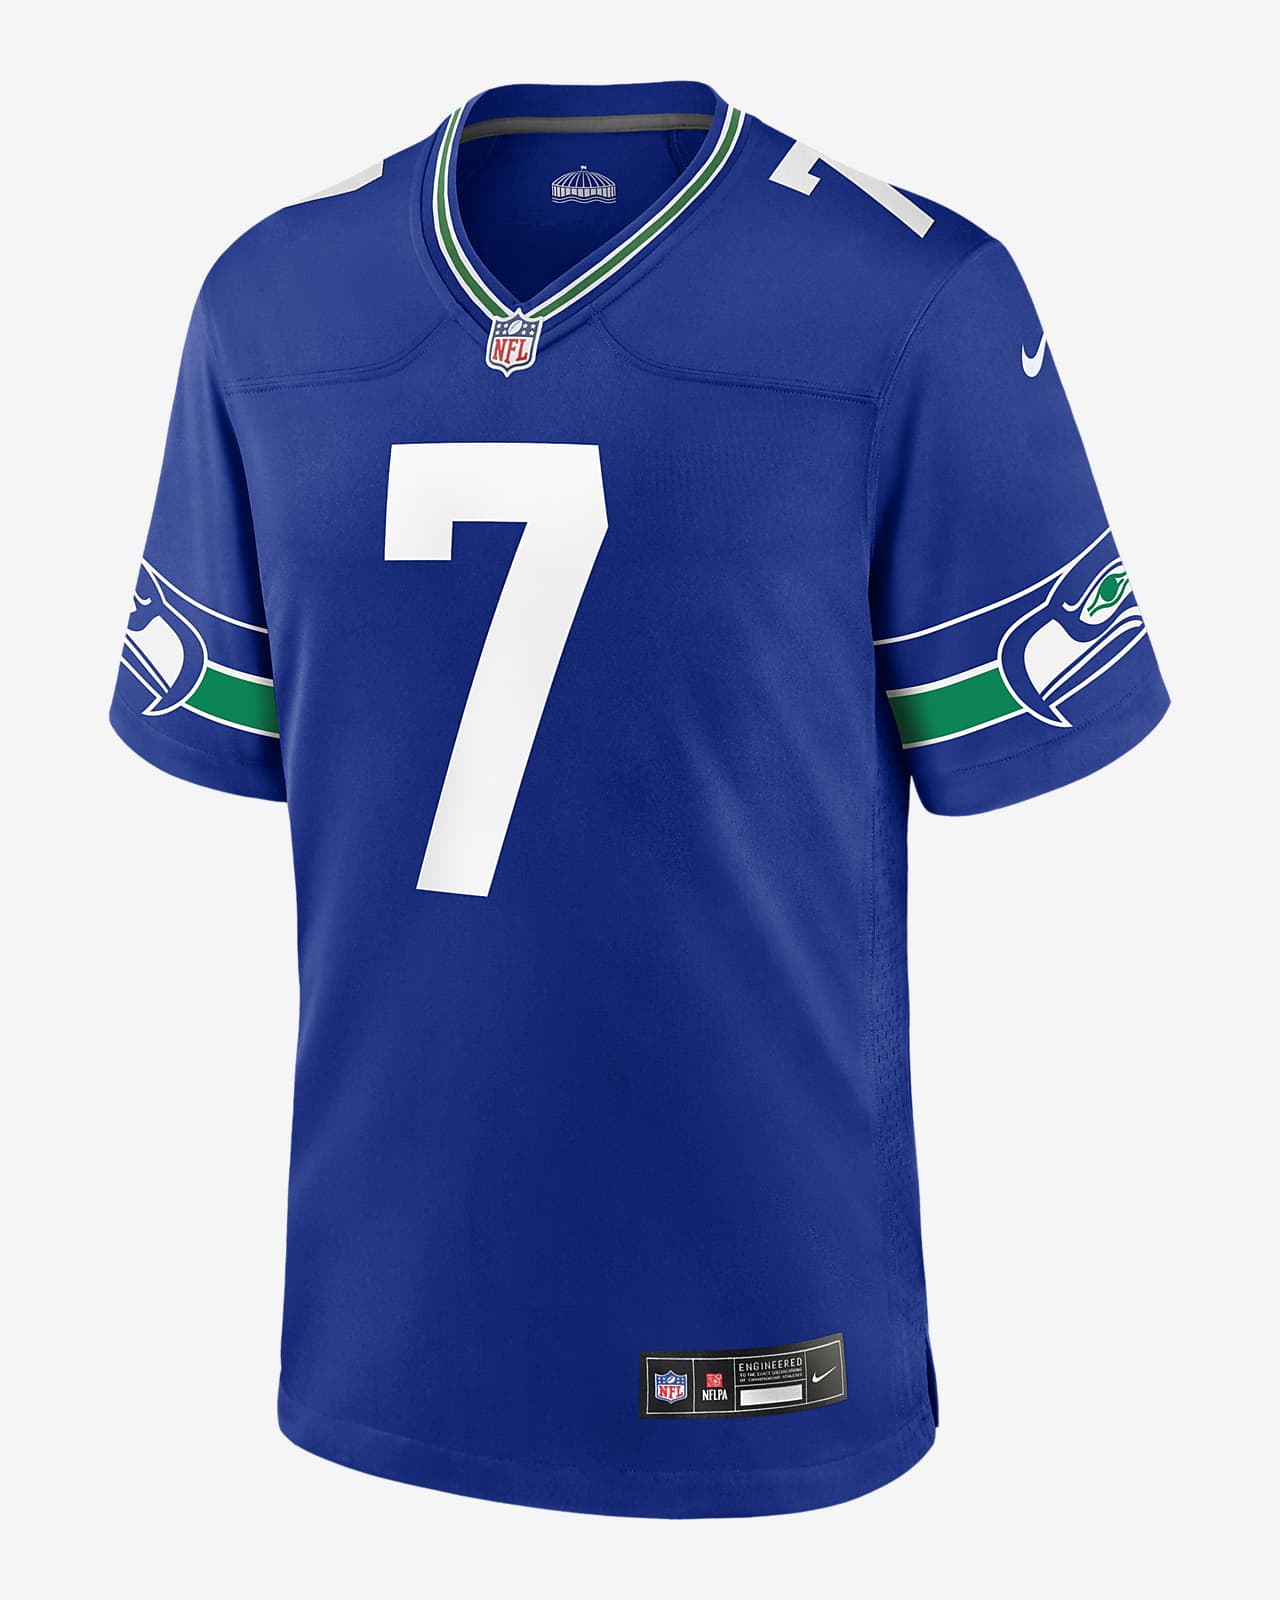 Jersey de fútbol americano Nike de la NFL Game para hombre Geno Smith Seattle Seahawks